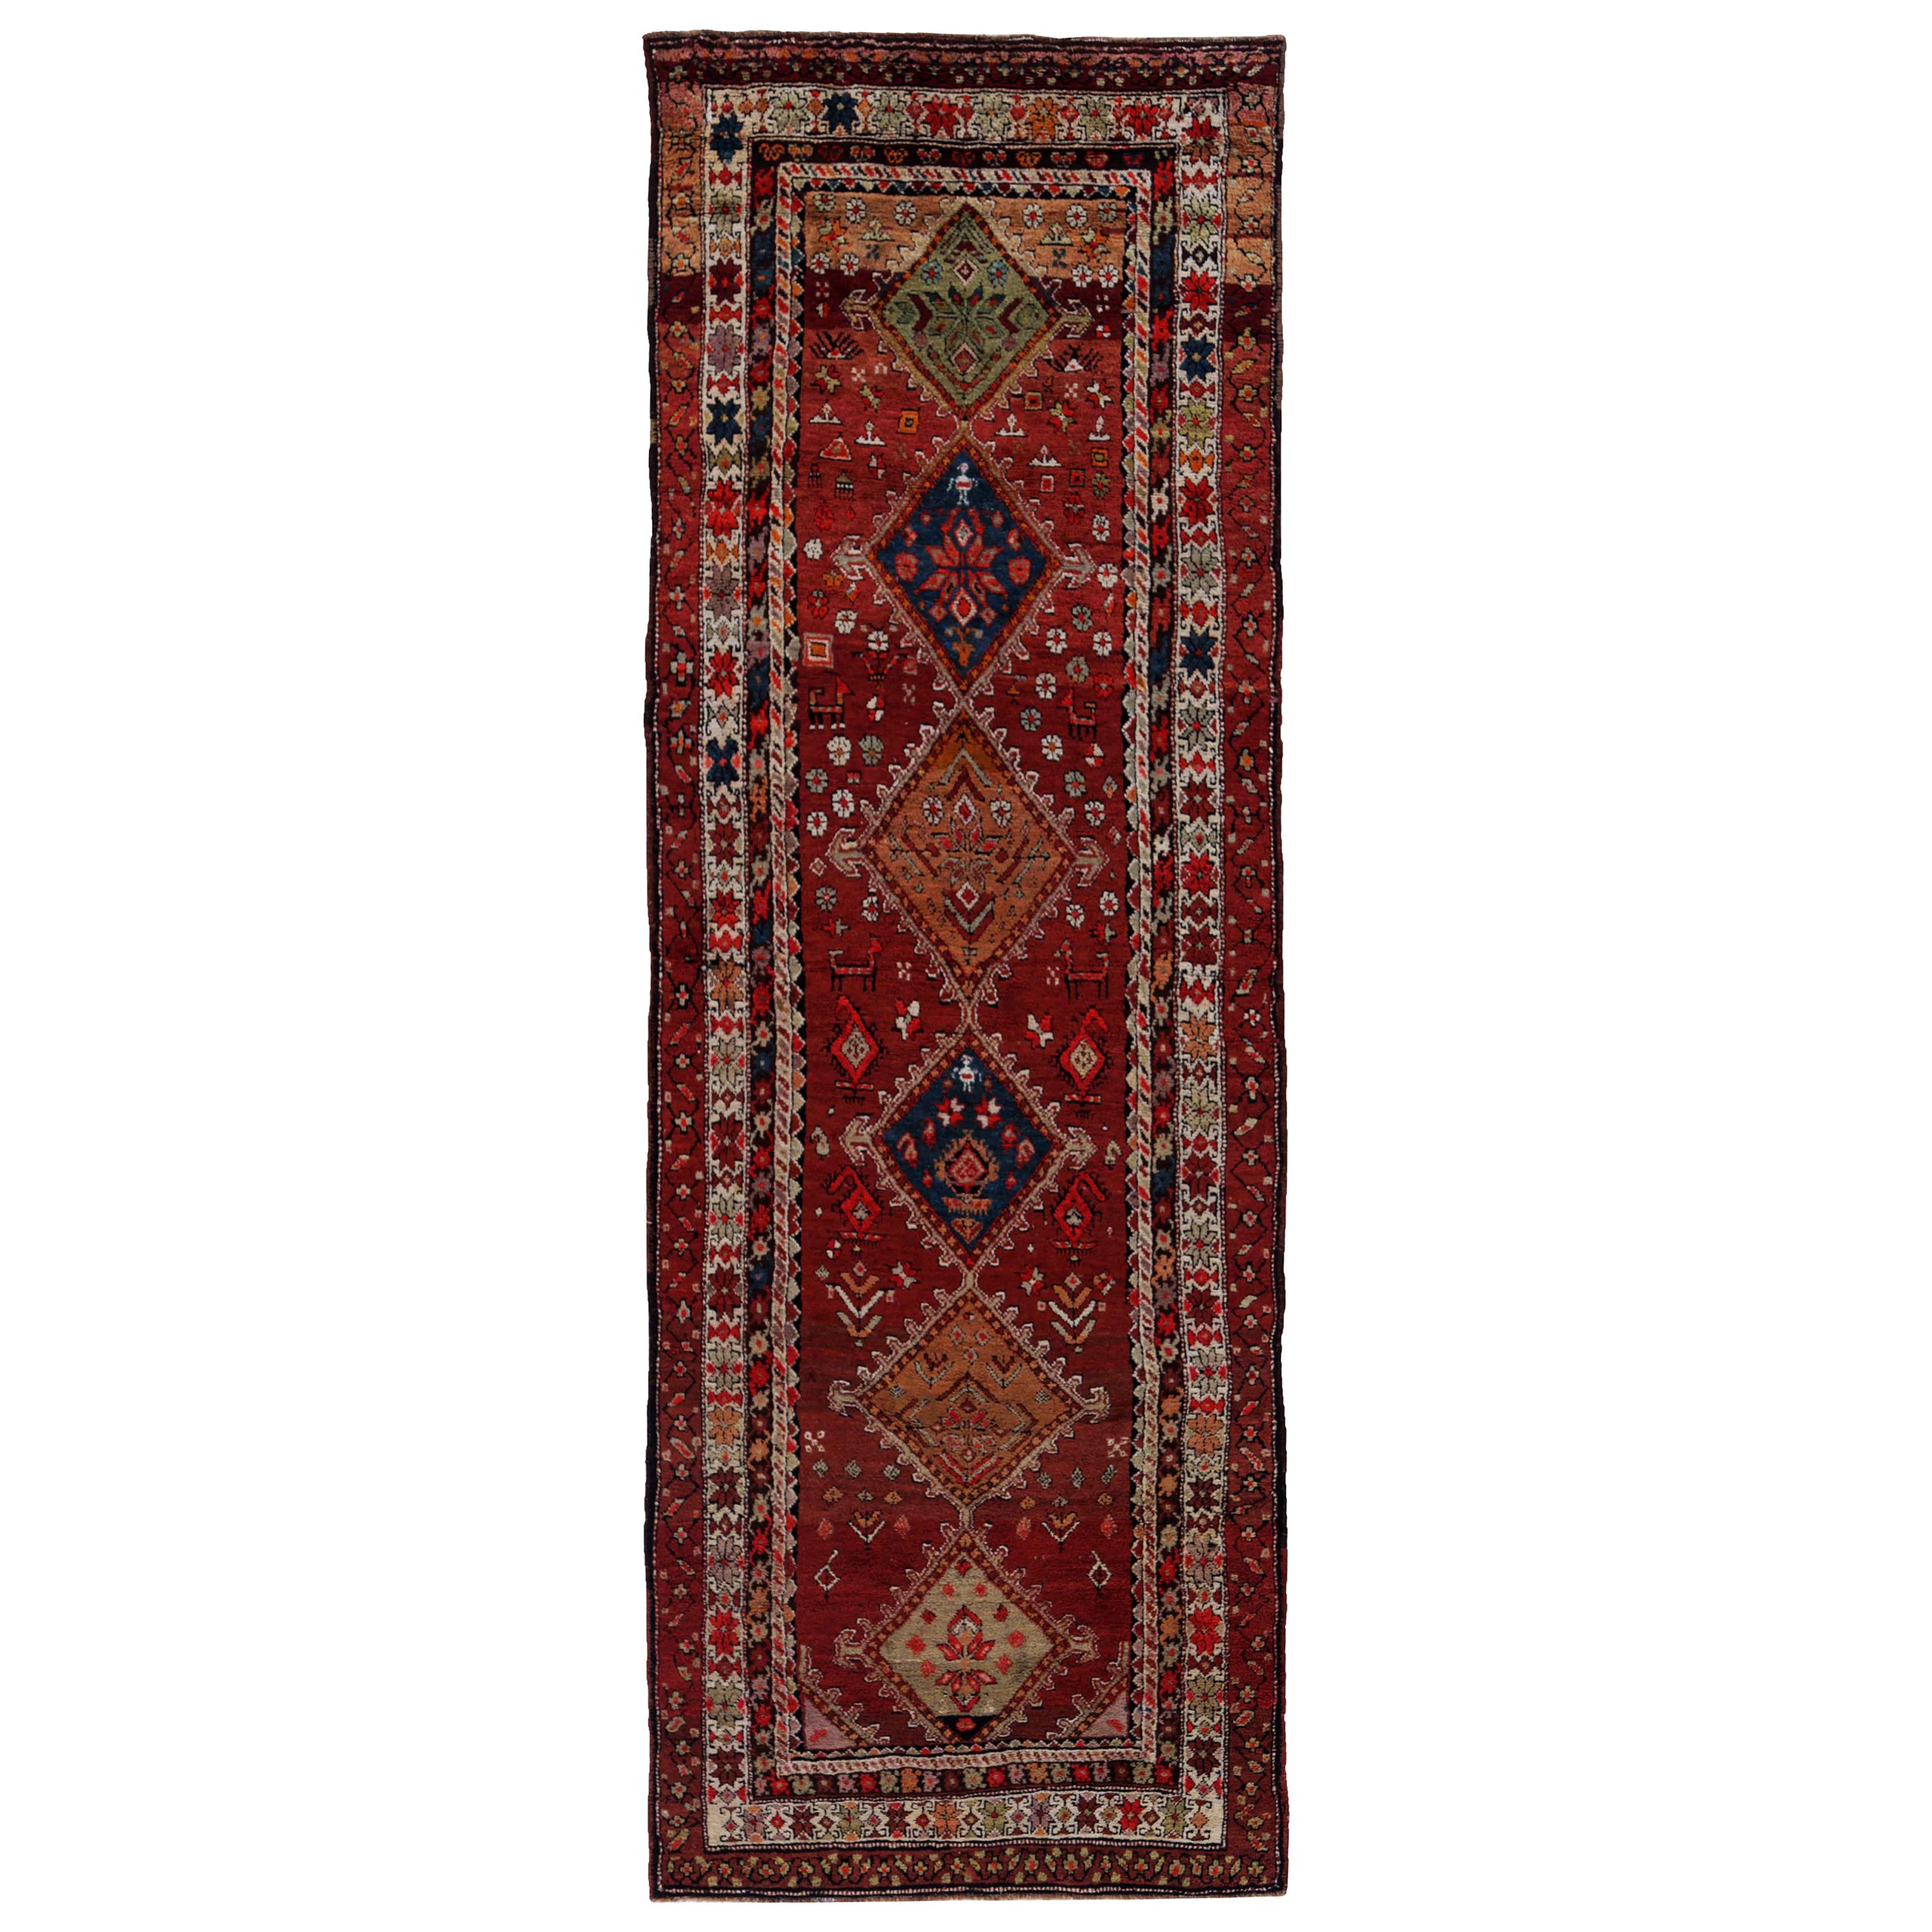 Antiker persischer Teppich im Kazak-Design